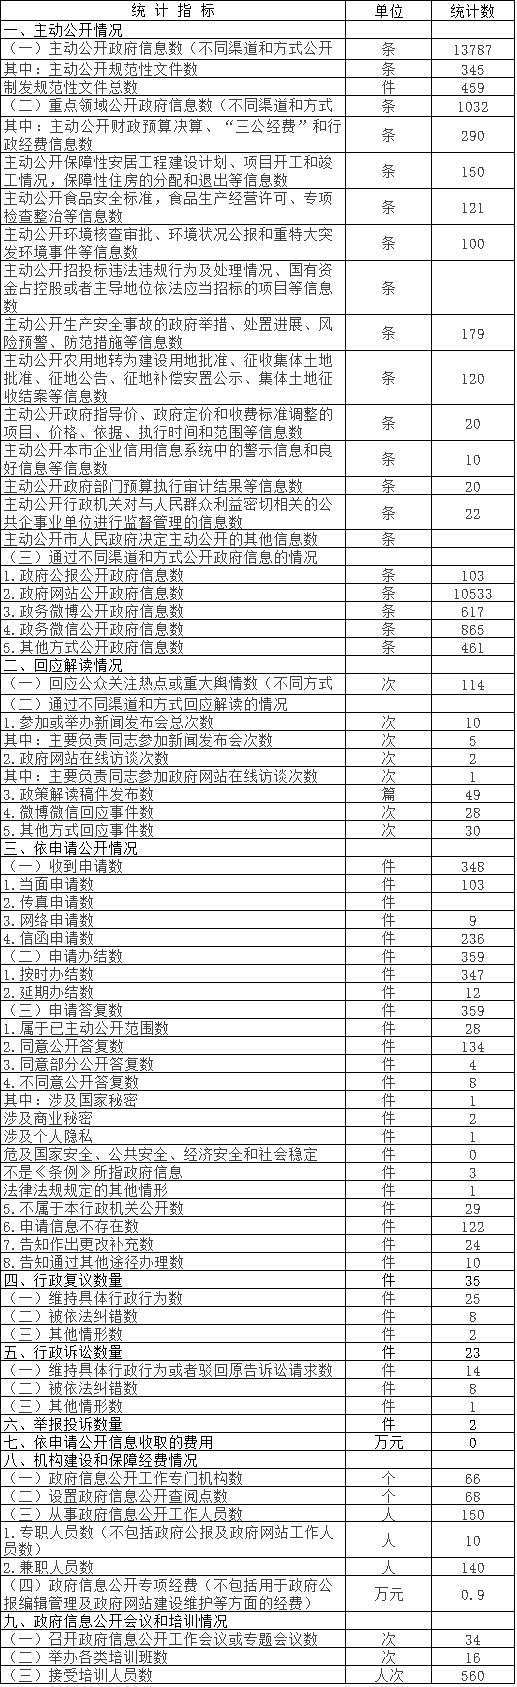 北京市通州区政府信息公开情况统计表 (2016年度)